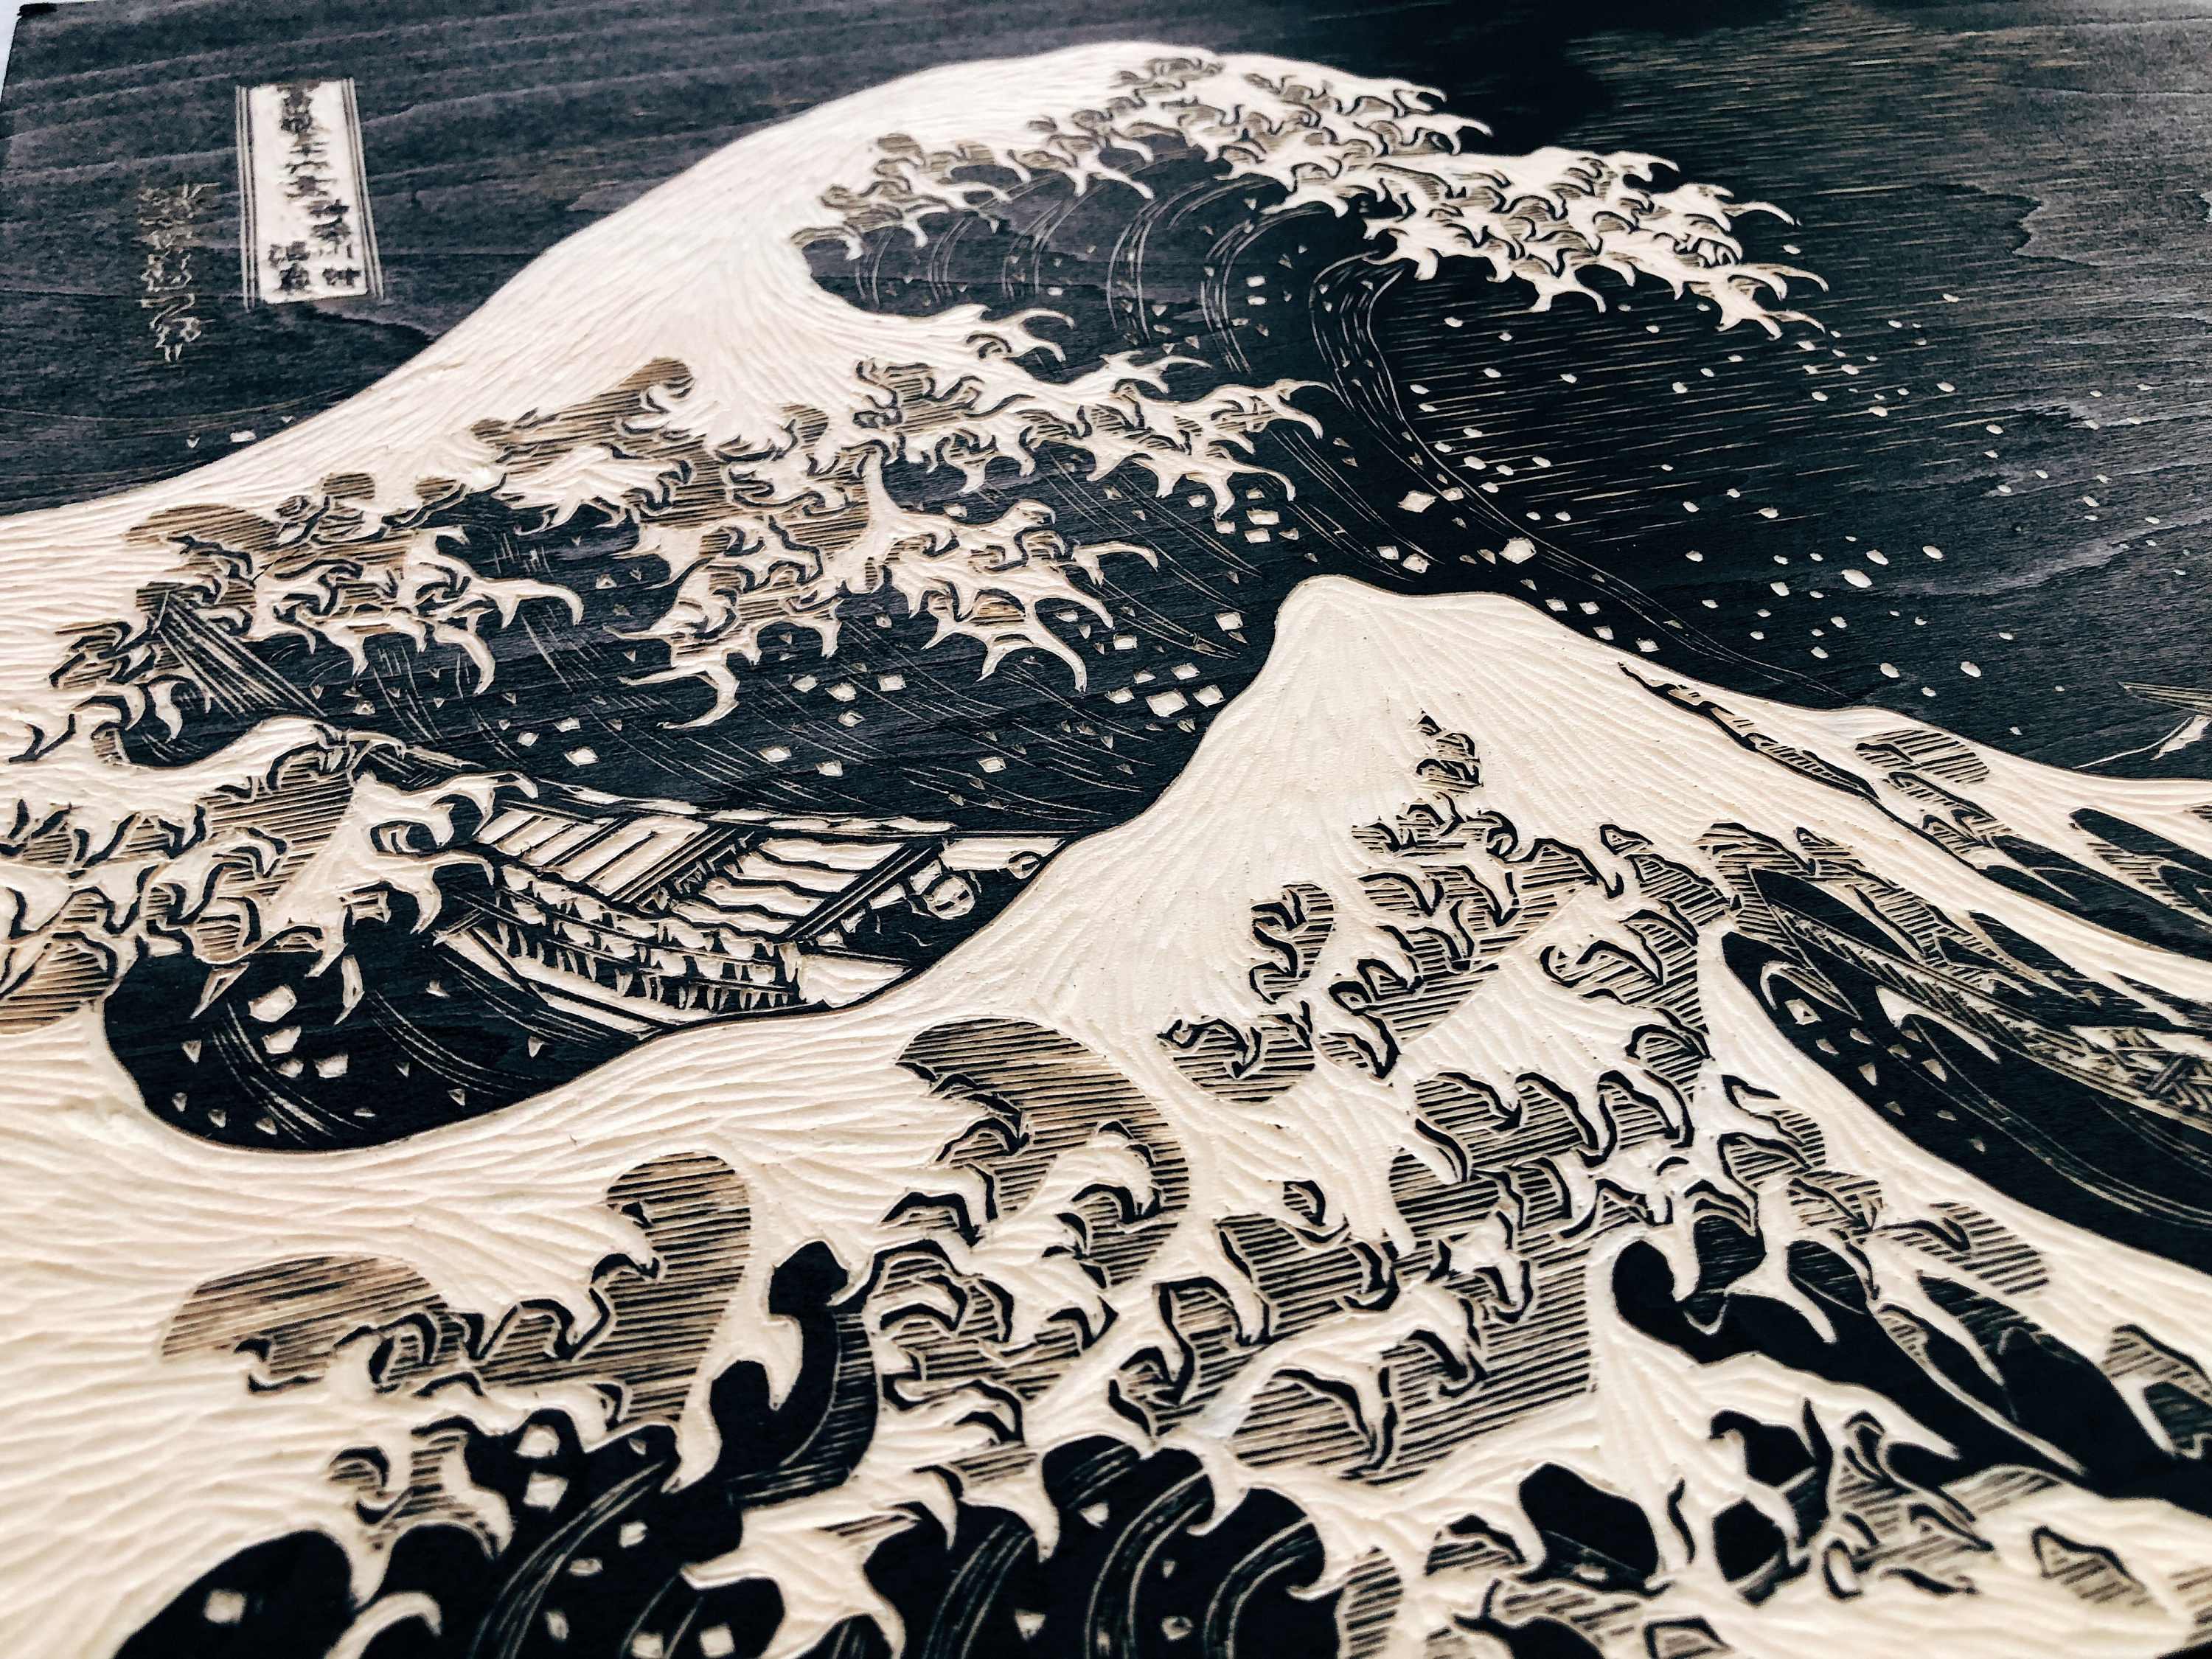 手工雕刻黑白木刻版画《星空》《神奈川冲浪里》